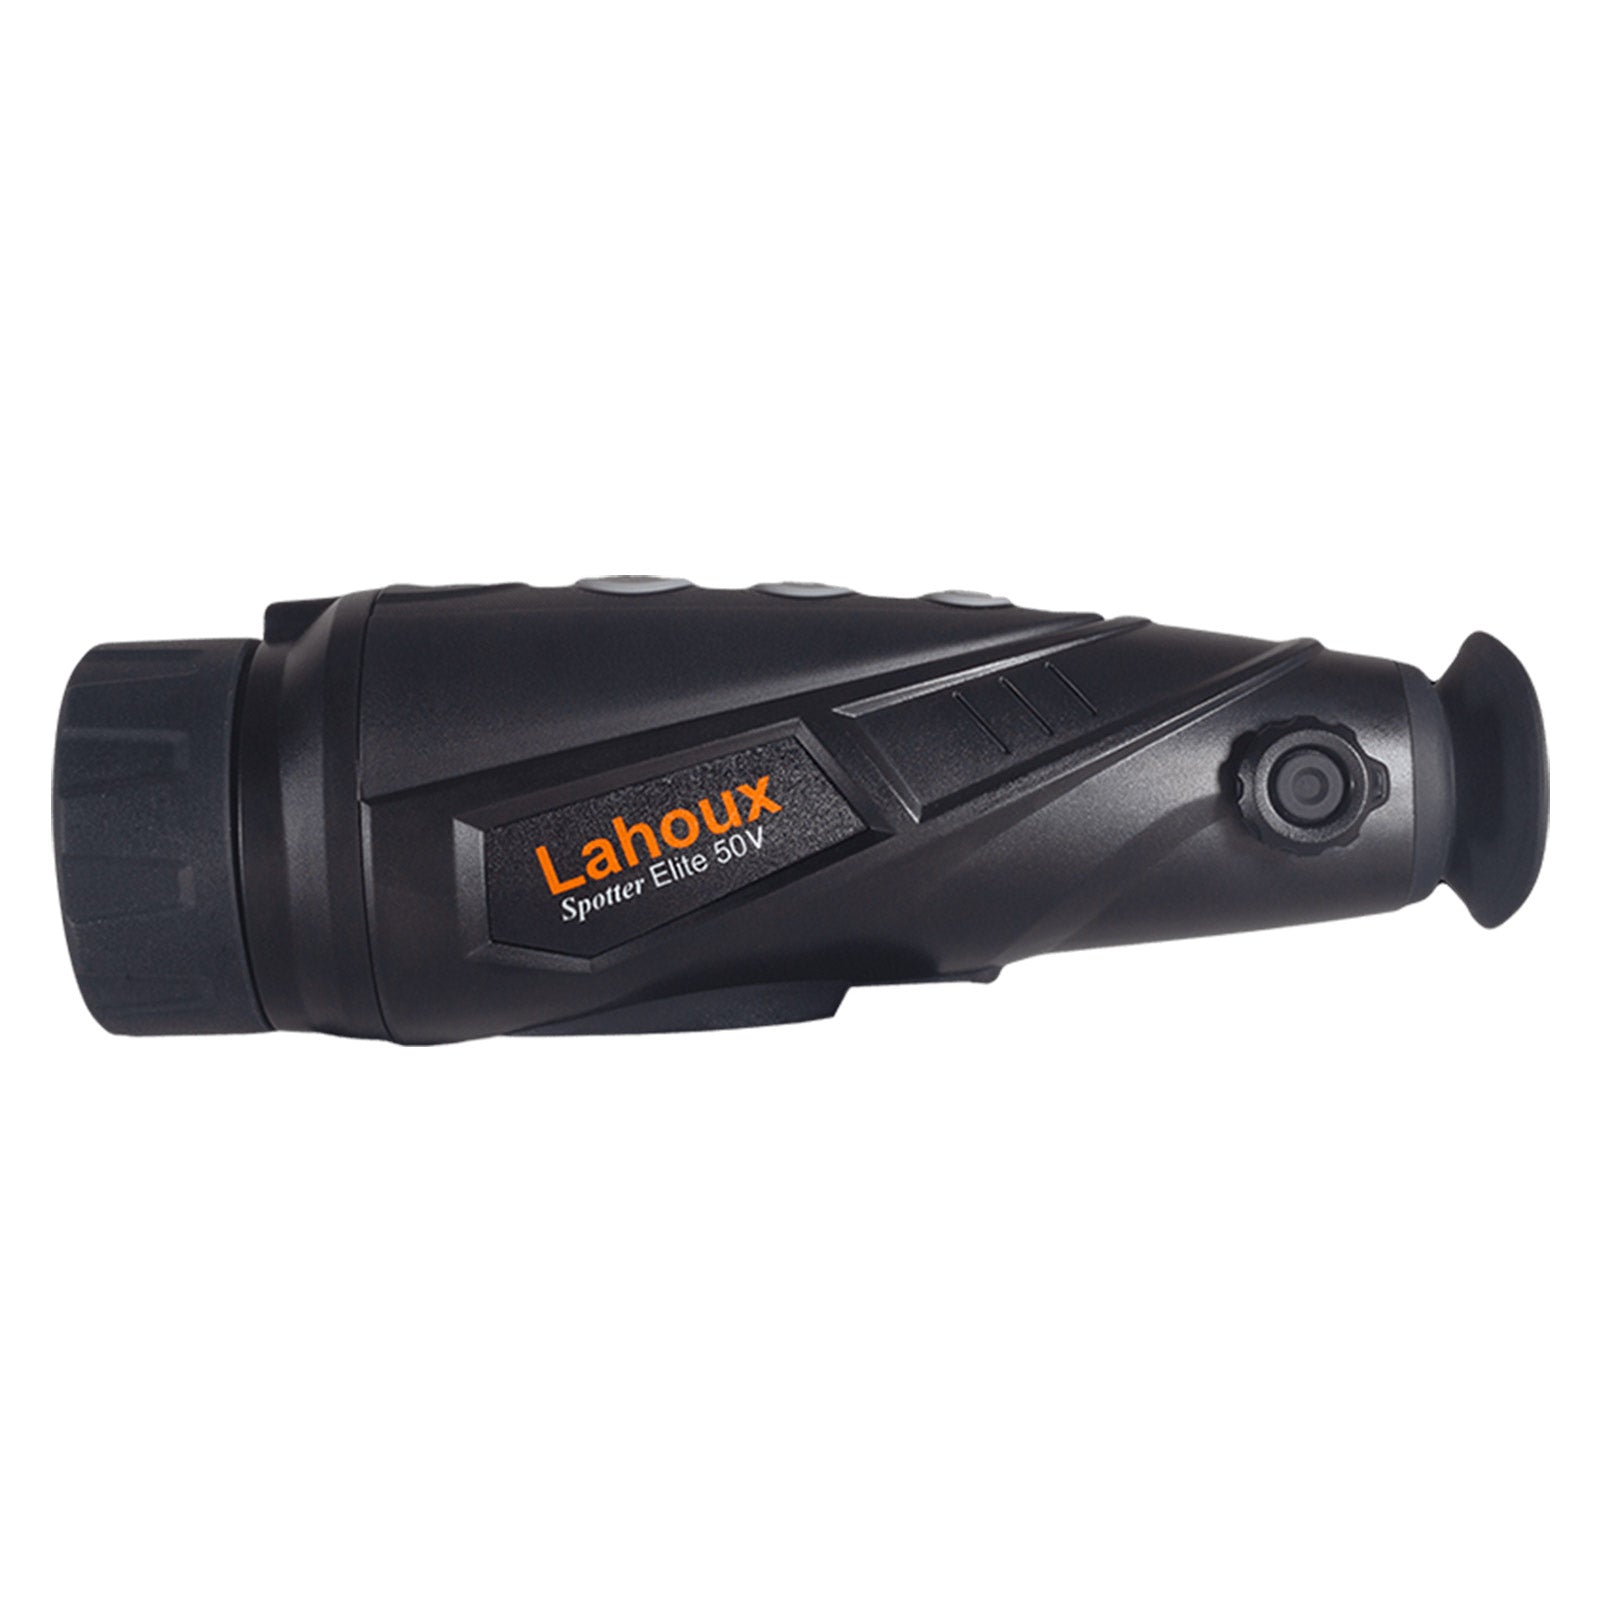 Es handelt sich hier um LAHOUX Spotter Elite 50V Wärmebildkamera für die Jagd.